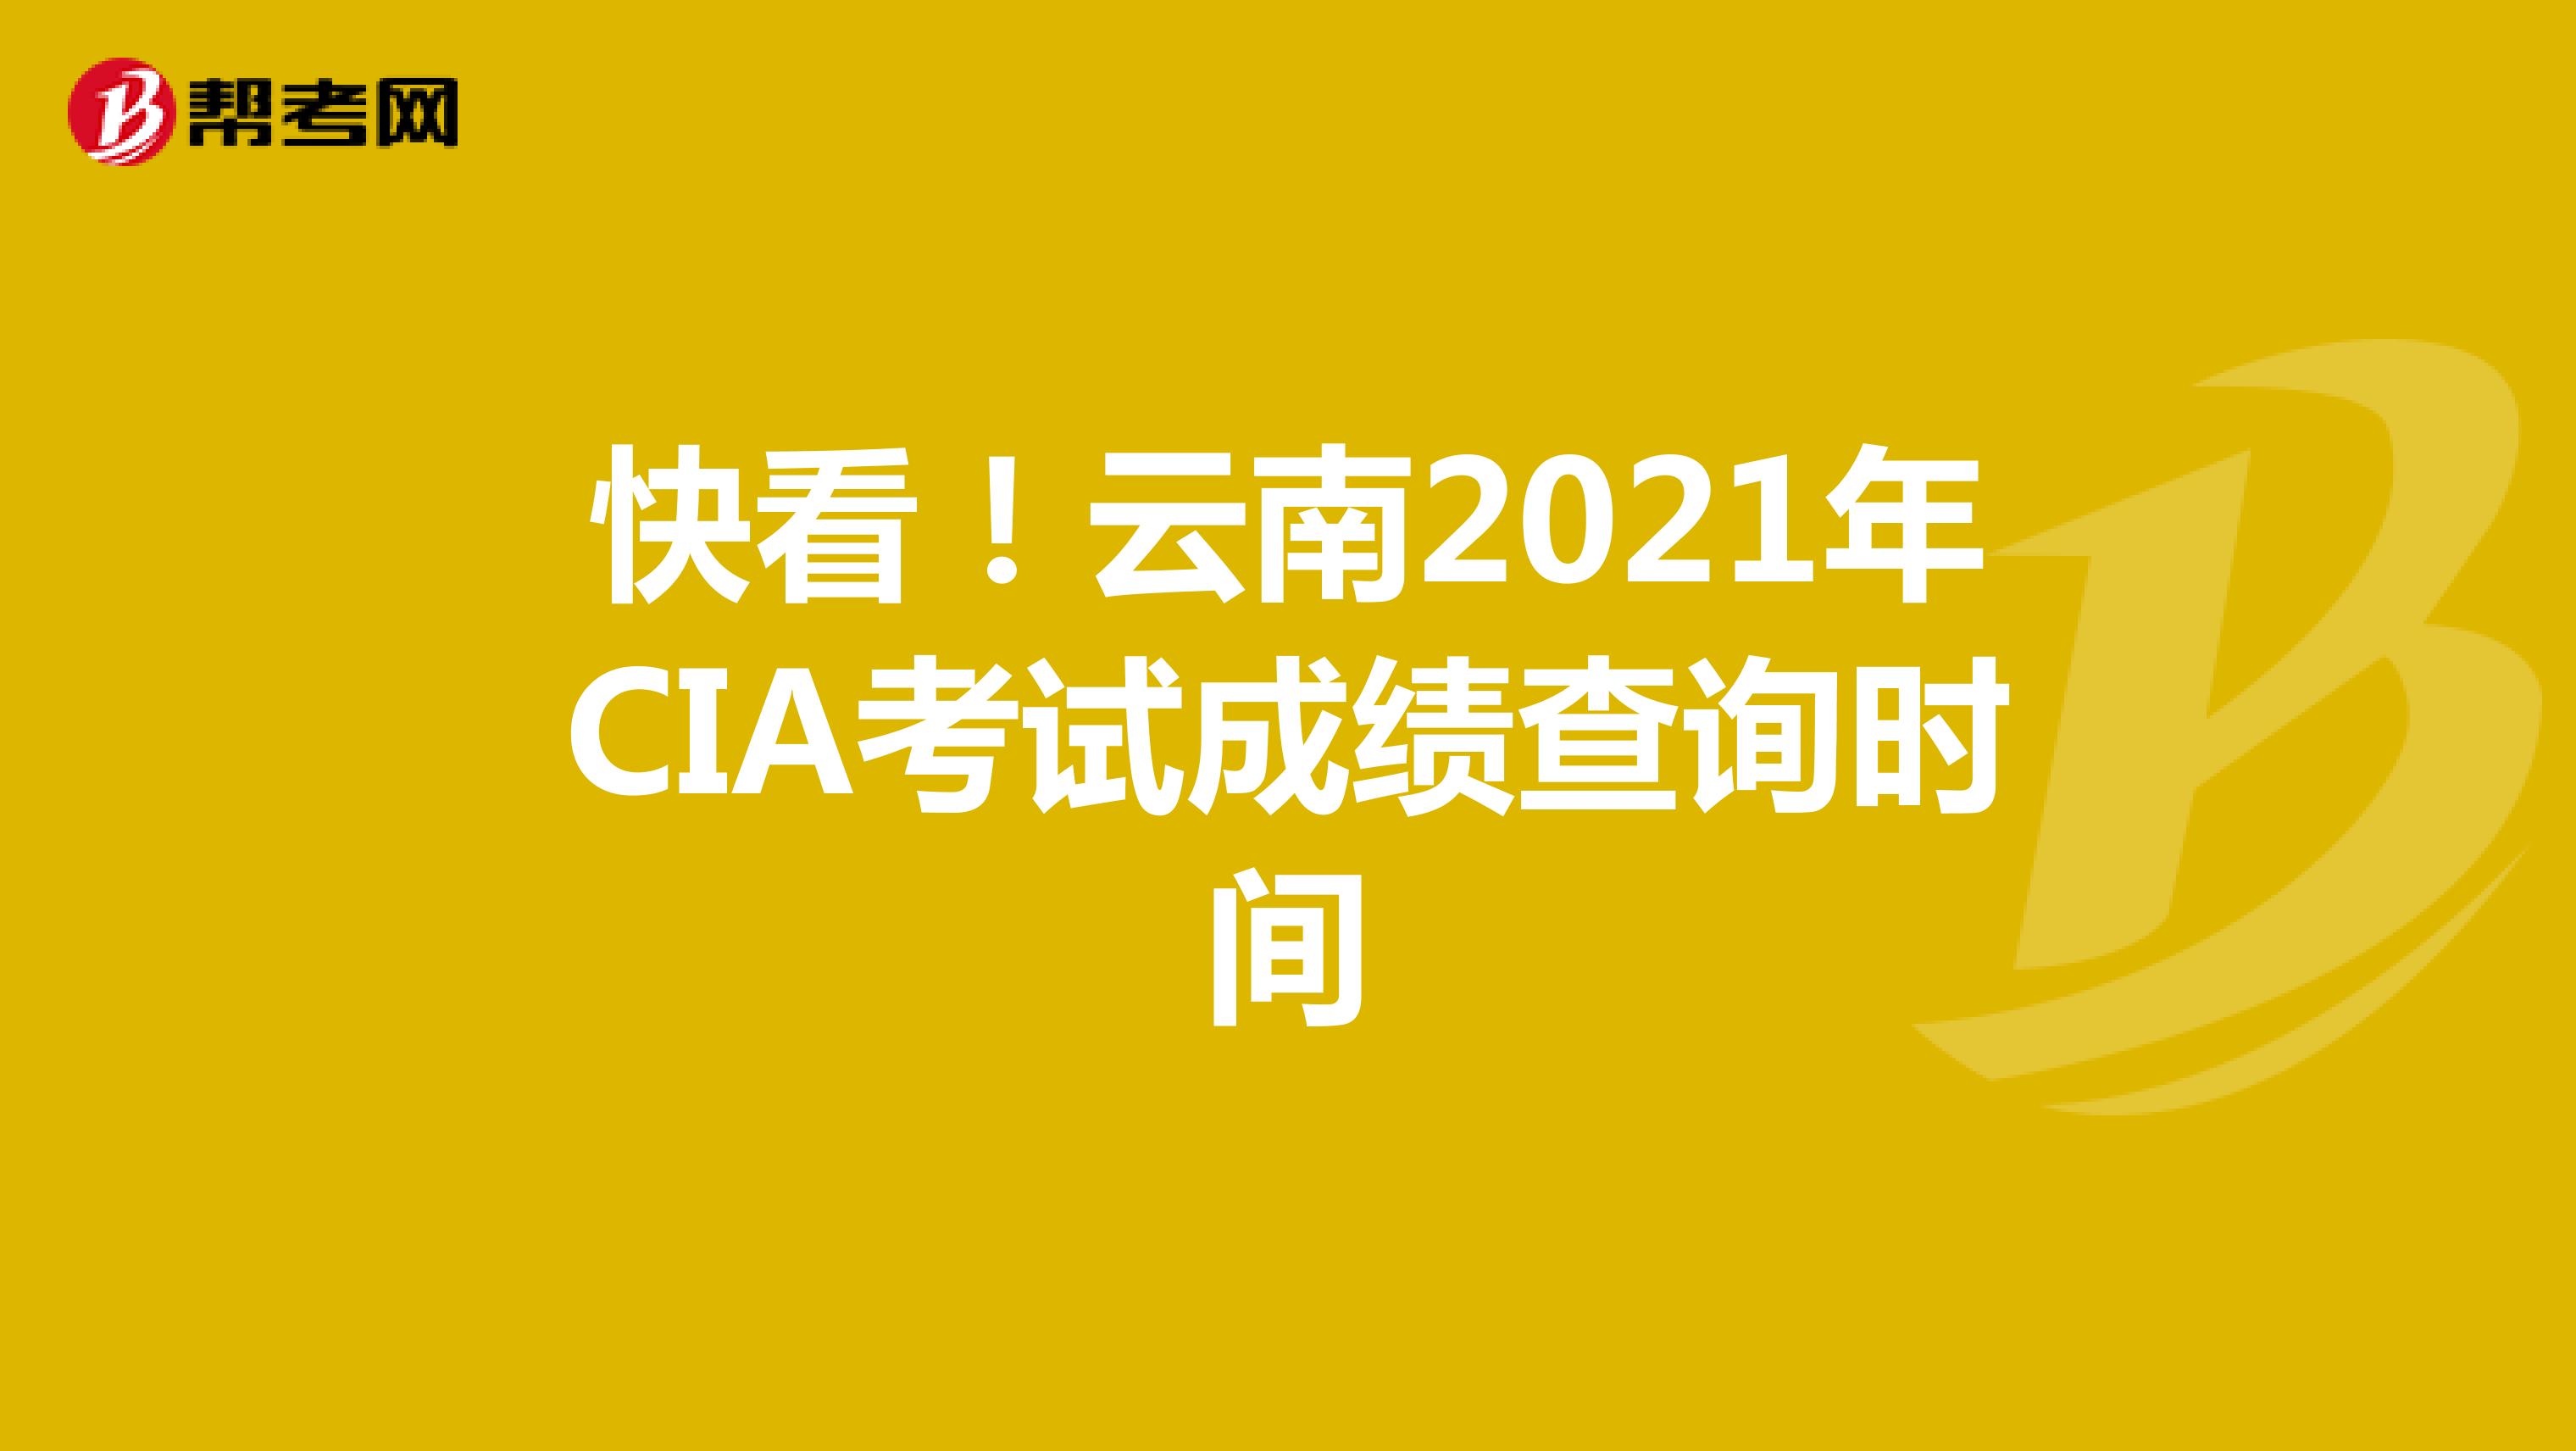 快看！云南2021年CIA考试成绩查询时间